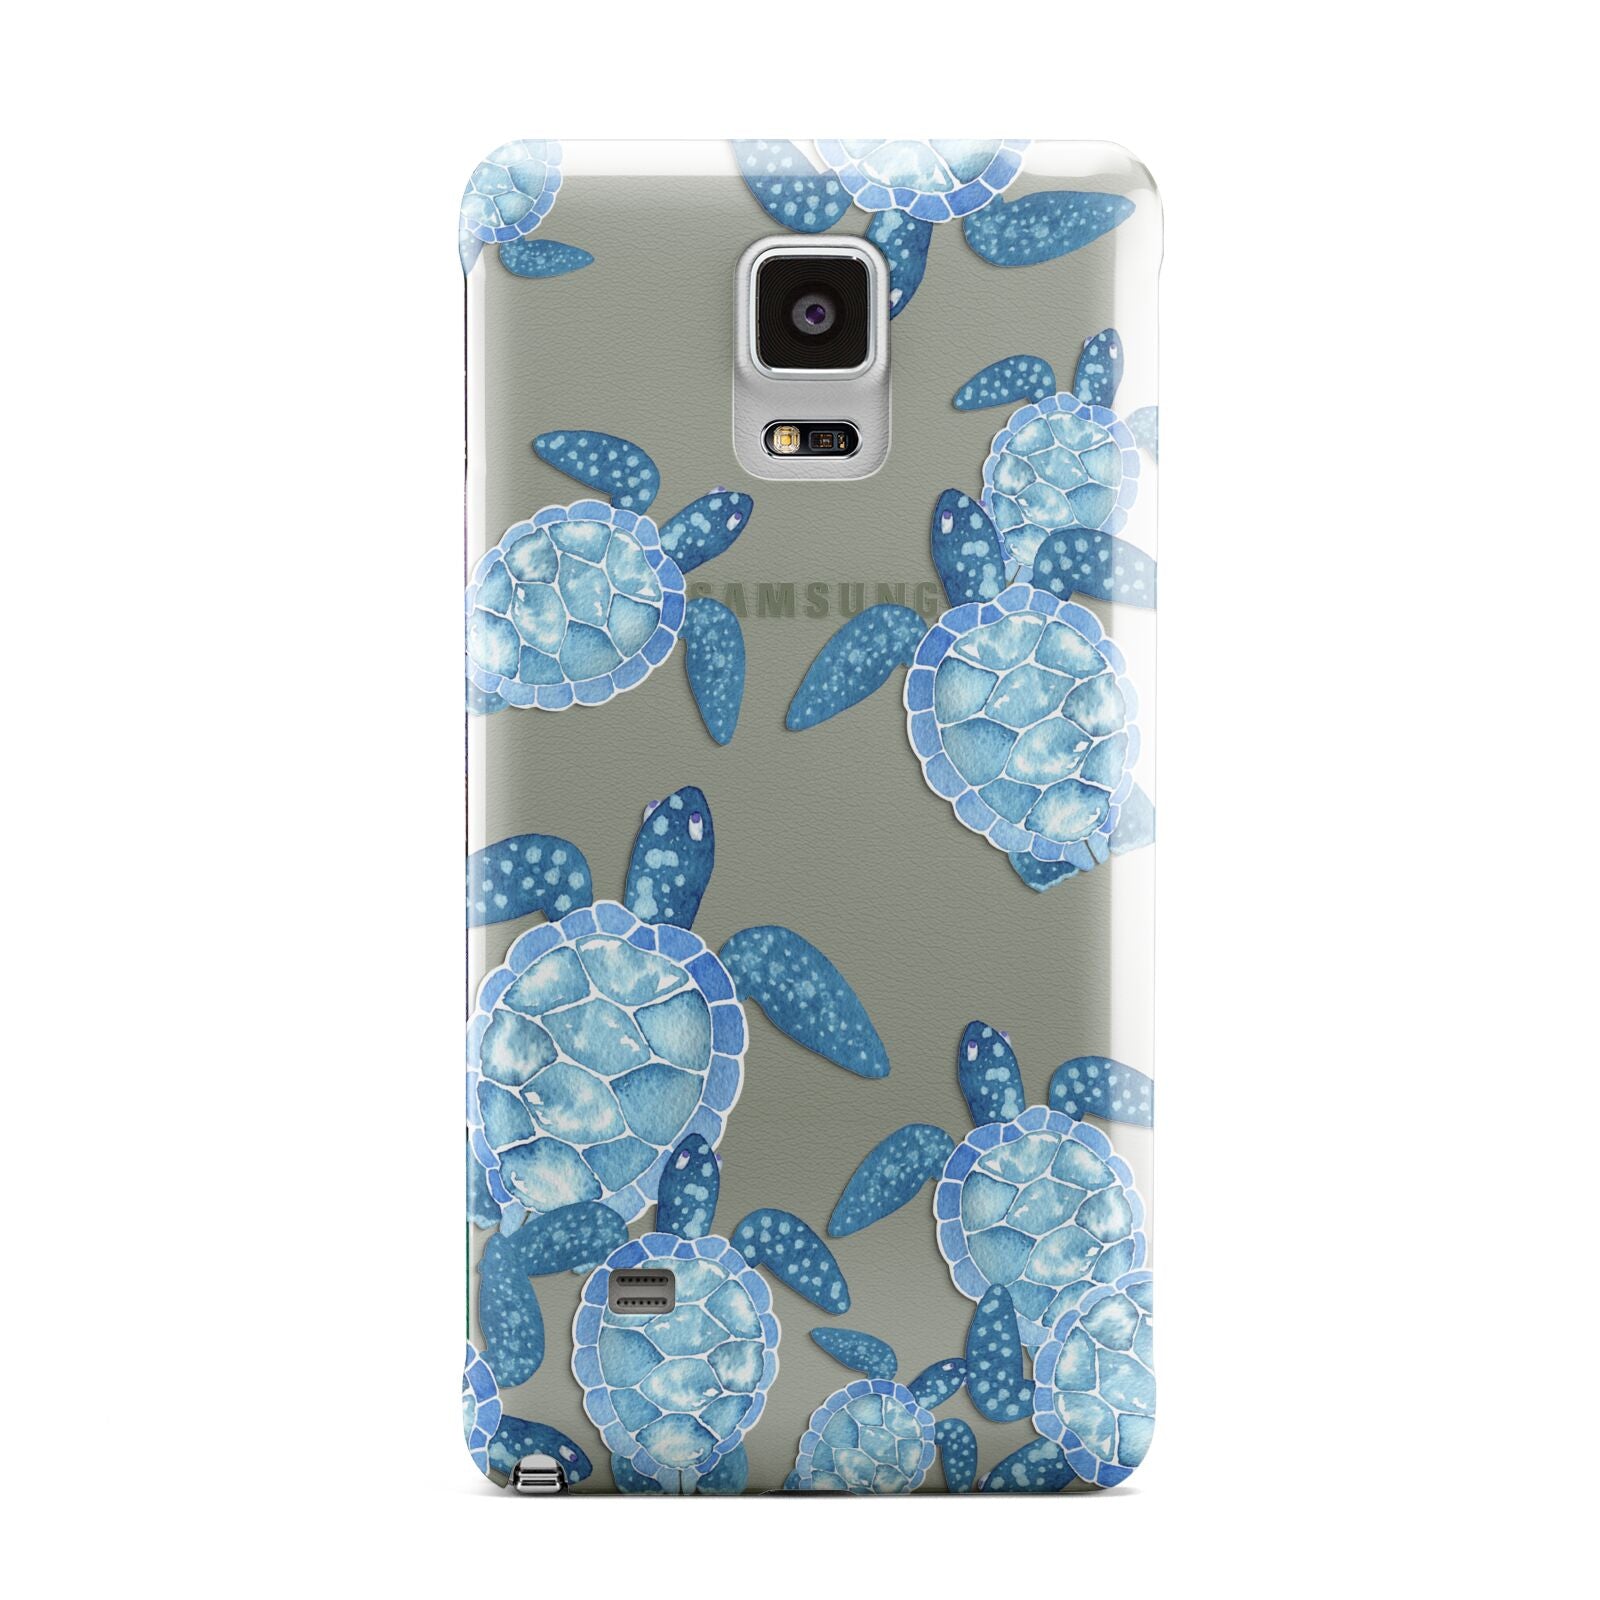 Turtle Samsung Galaxy Note 4 Case